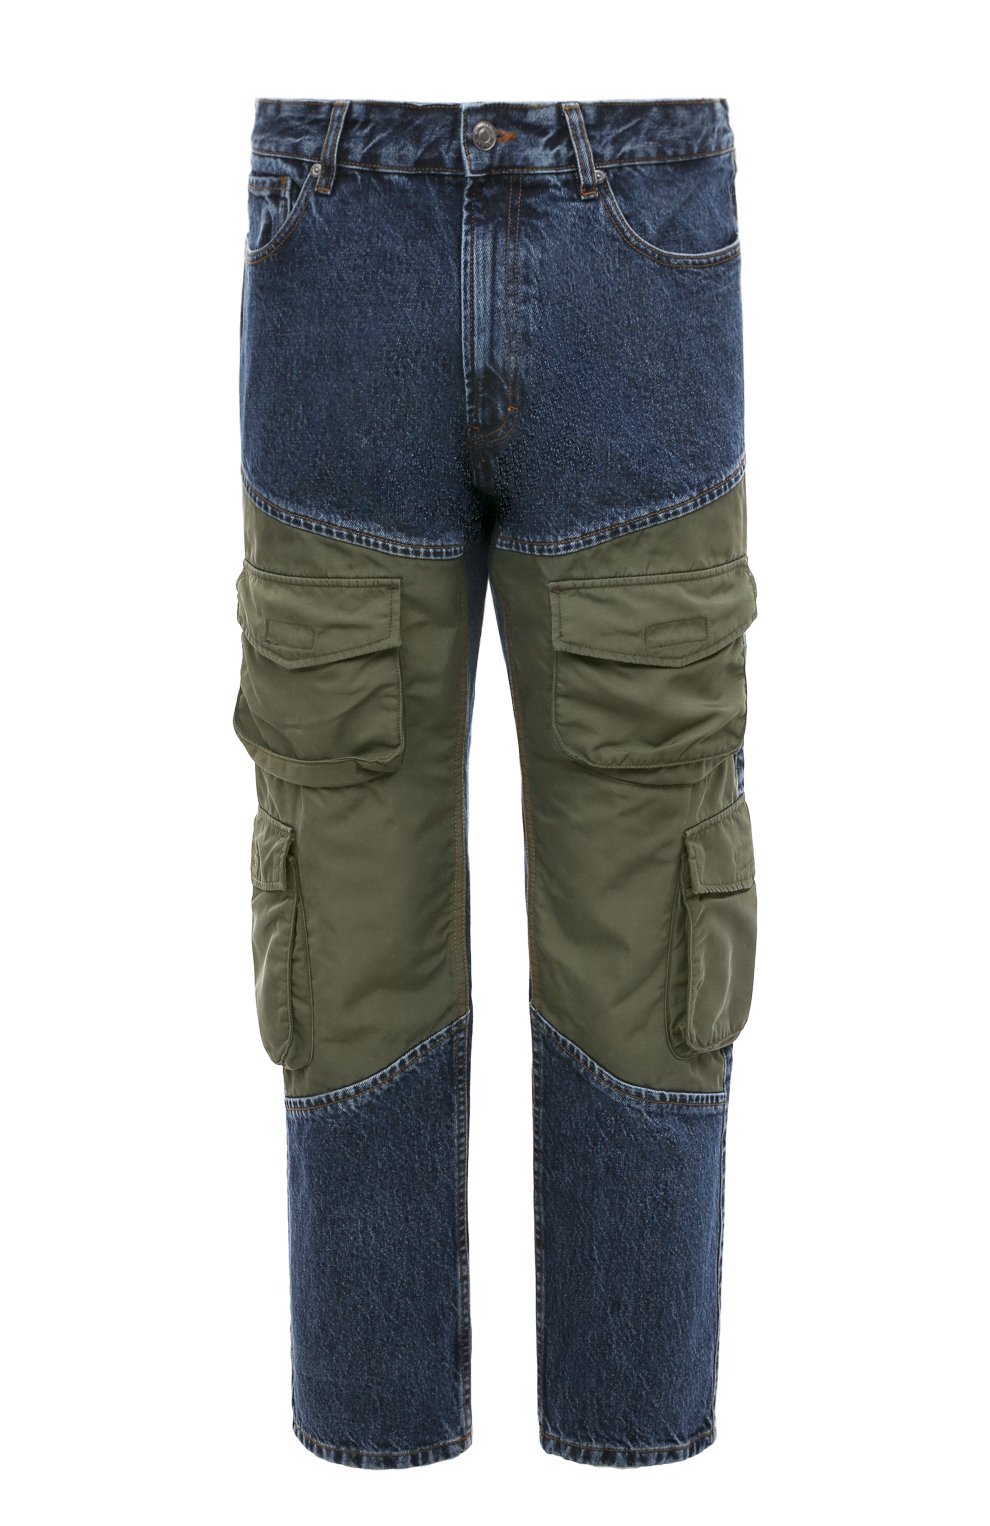 Джинсы HUGO, Комбинированные джинсы HUGO, Марокко, Синий, Хлопок: 100%;, 13381802  - купить